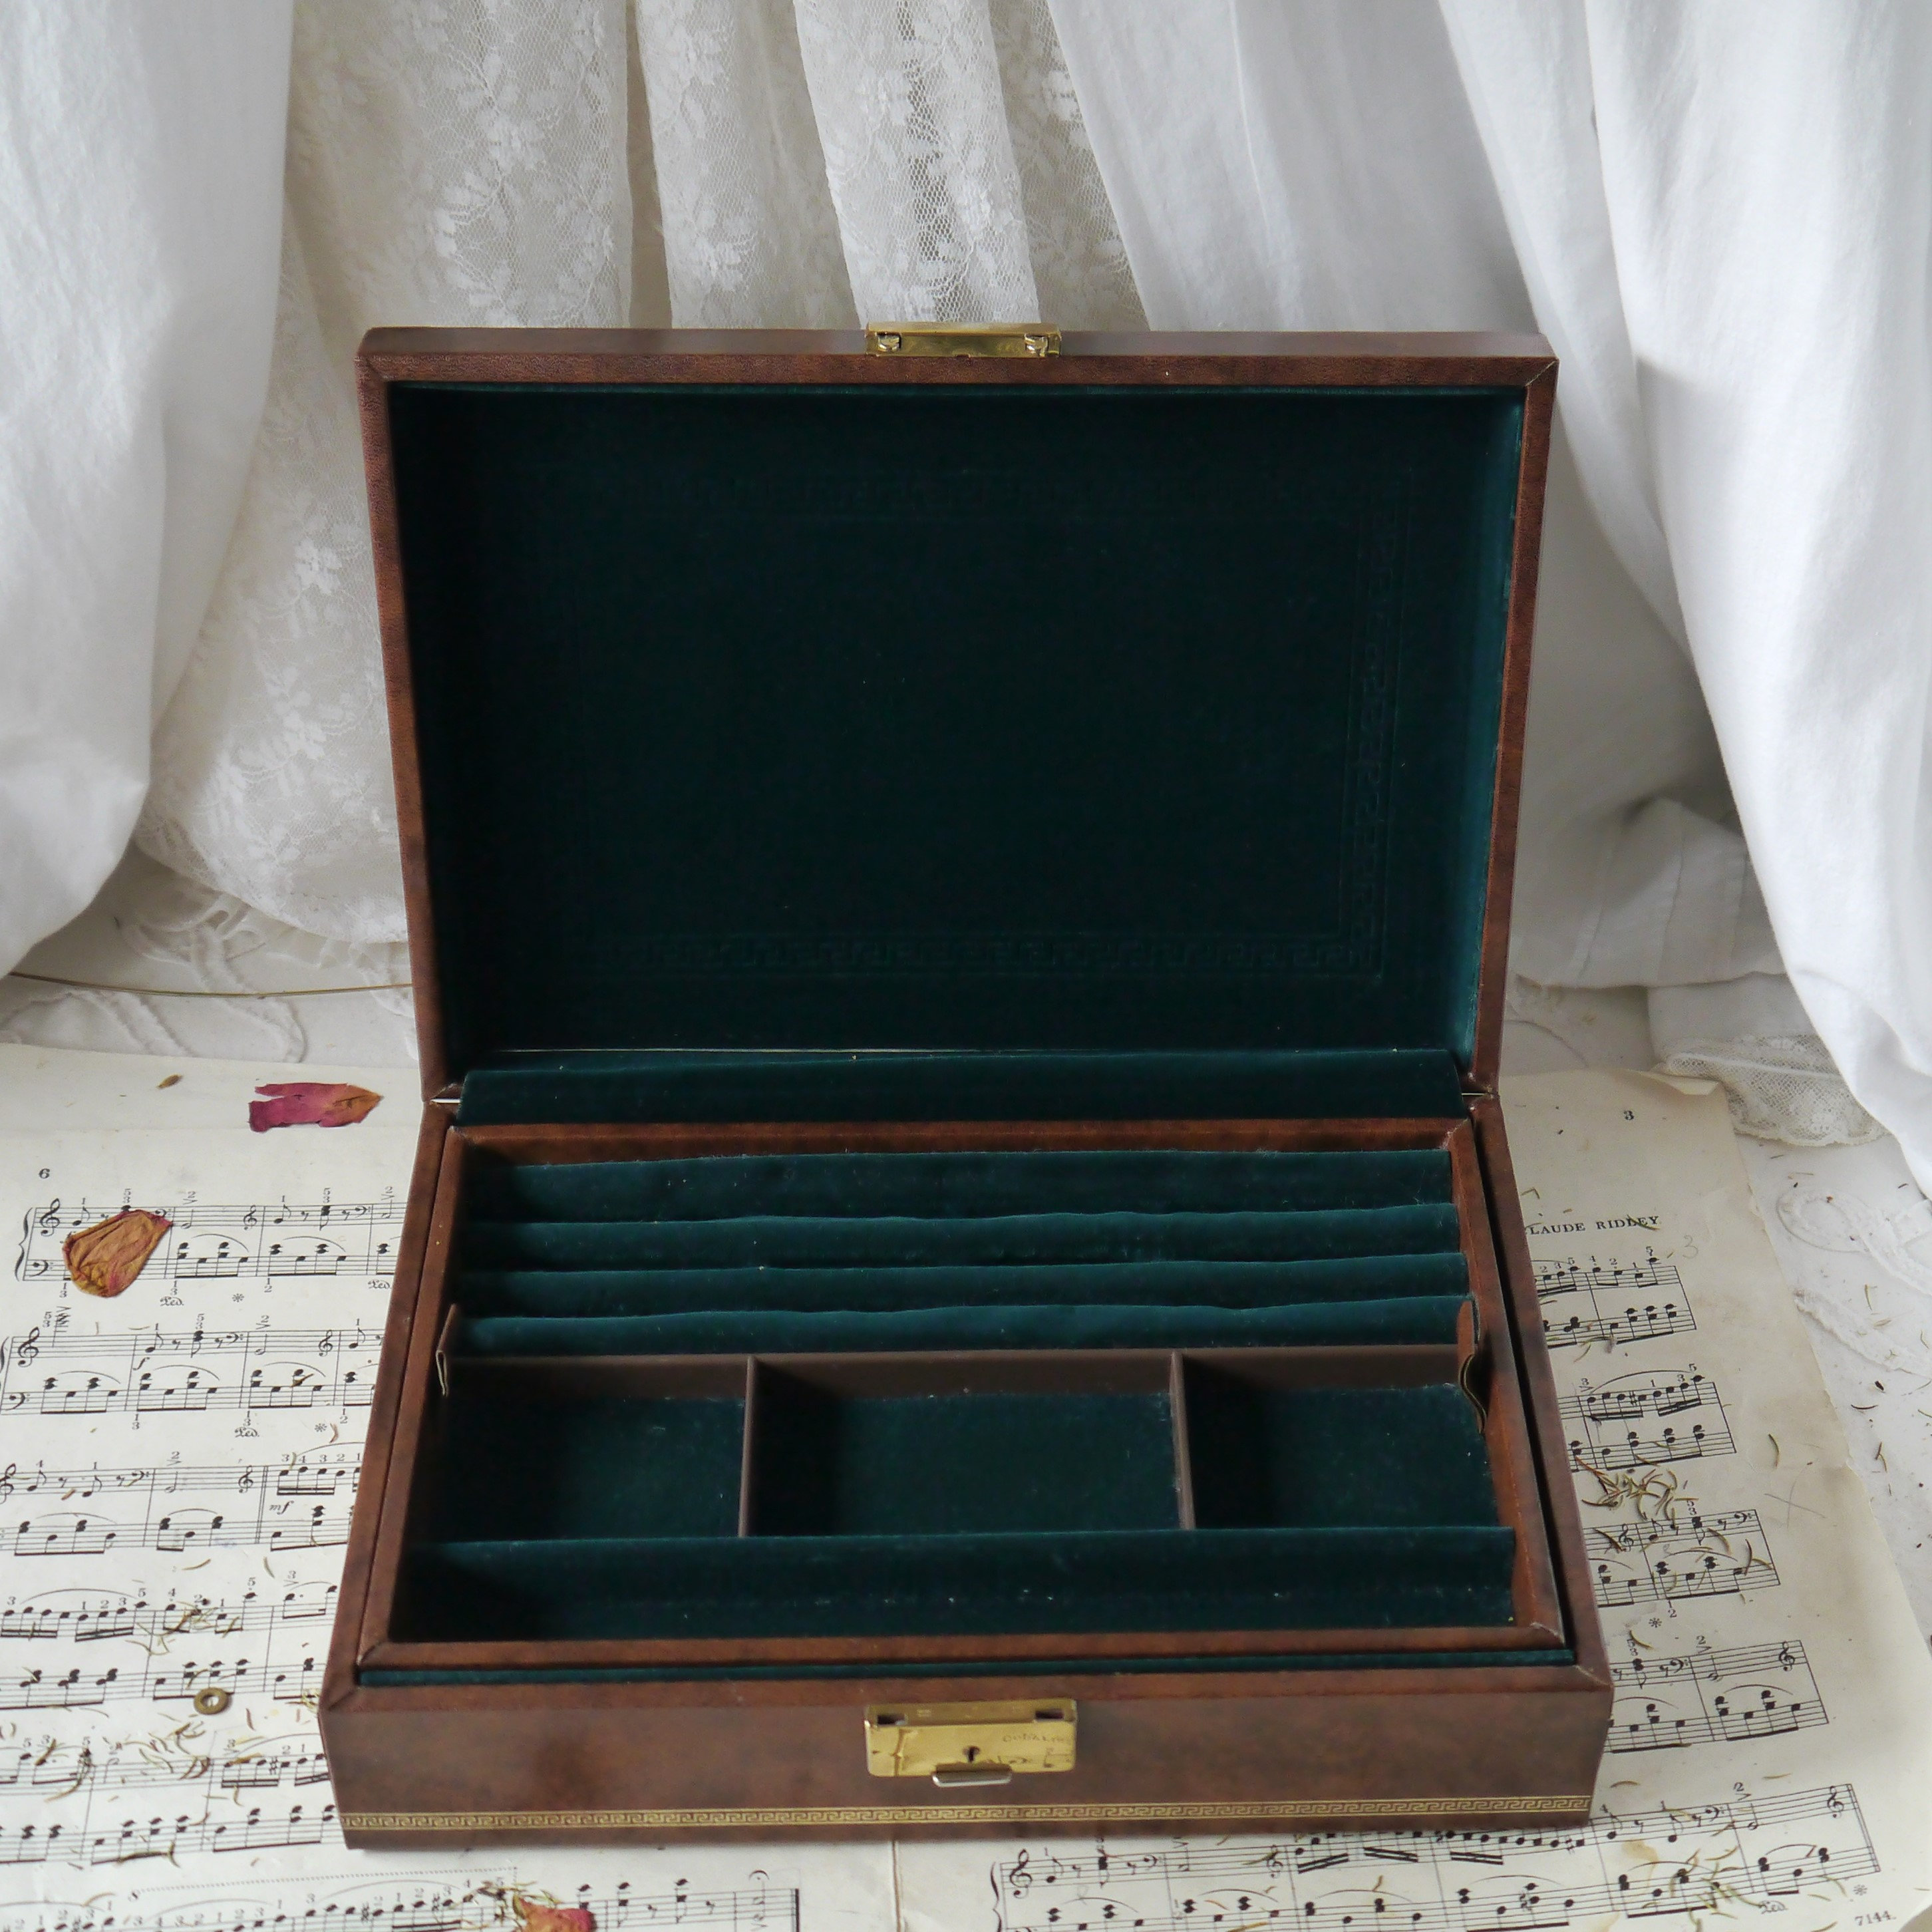 Wooden Glasses Case Mini Jewelry Oak Box Little Things Box -  Sweden